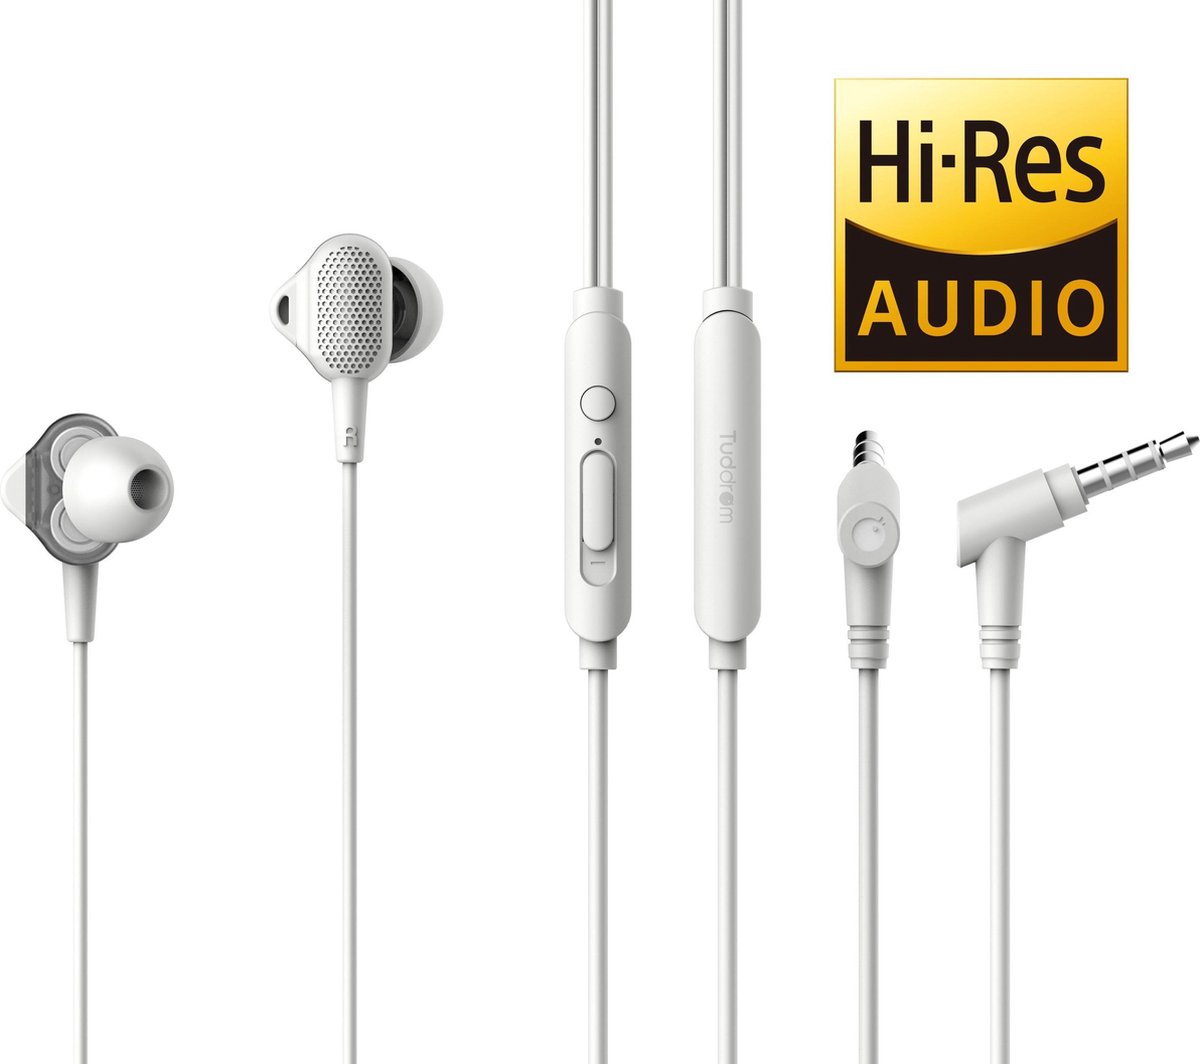 Tuddrom H3 Wit - Hi-Res In Ear Oordopjes met Microfoon - Dual High Quality Dynamic Drivers - 2 Jaar Garantie